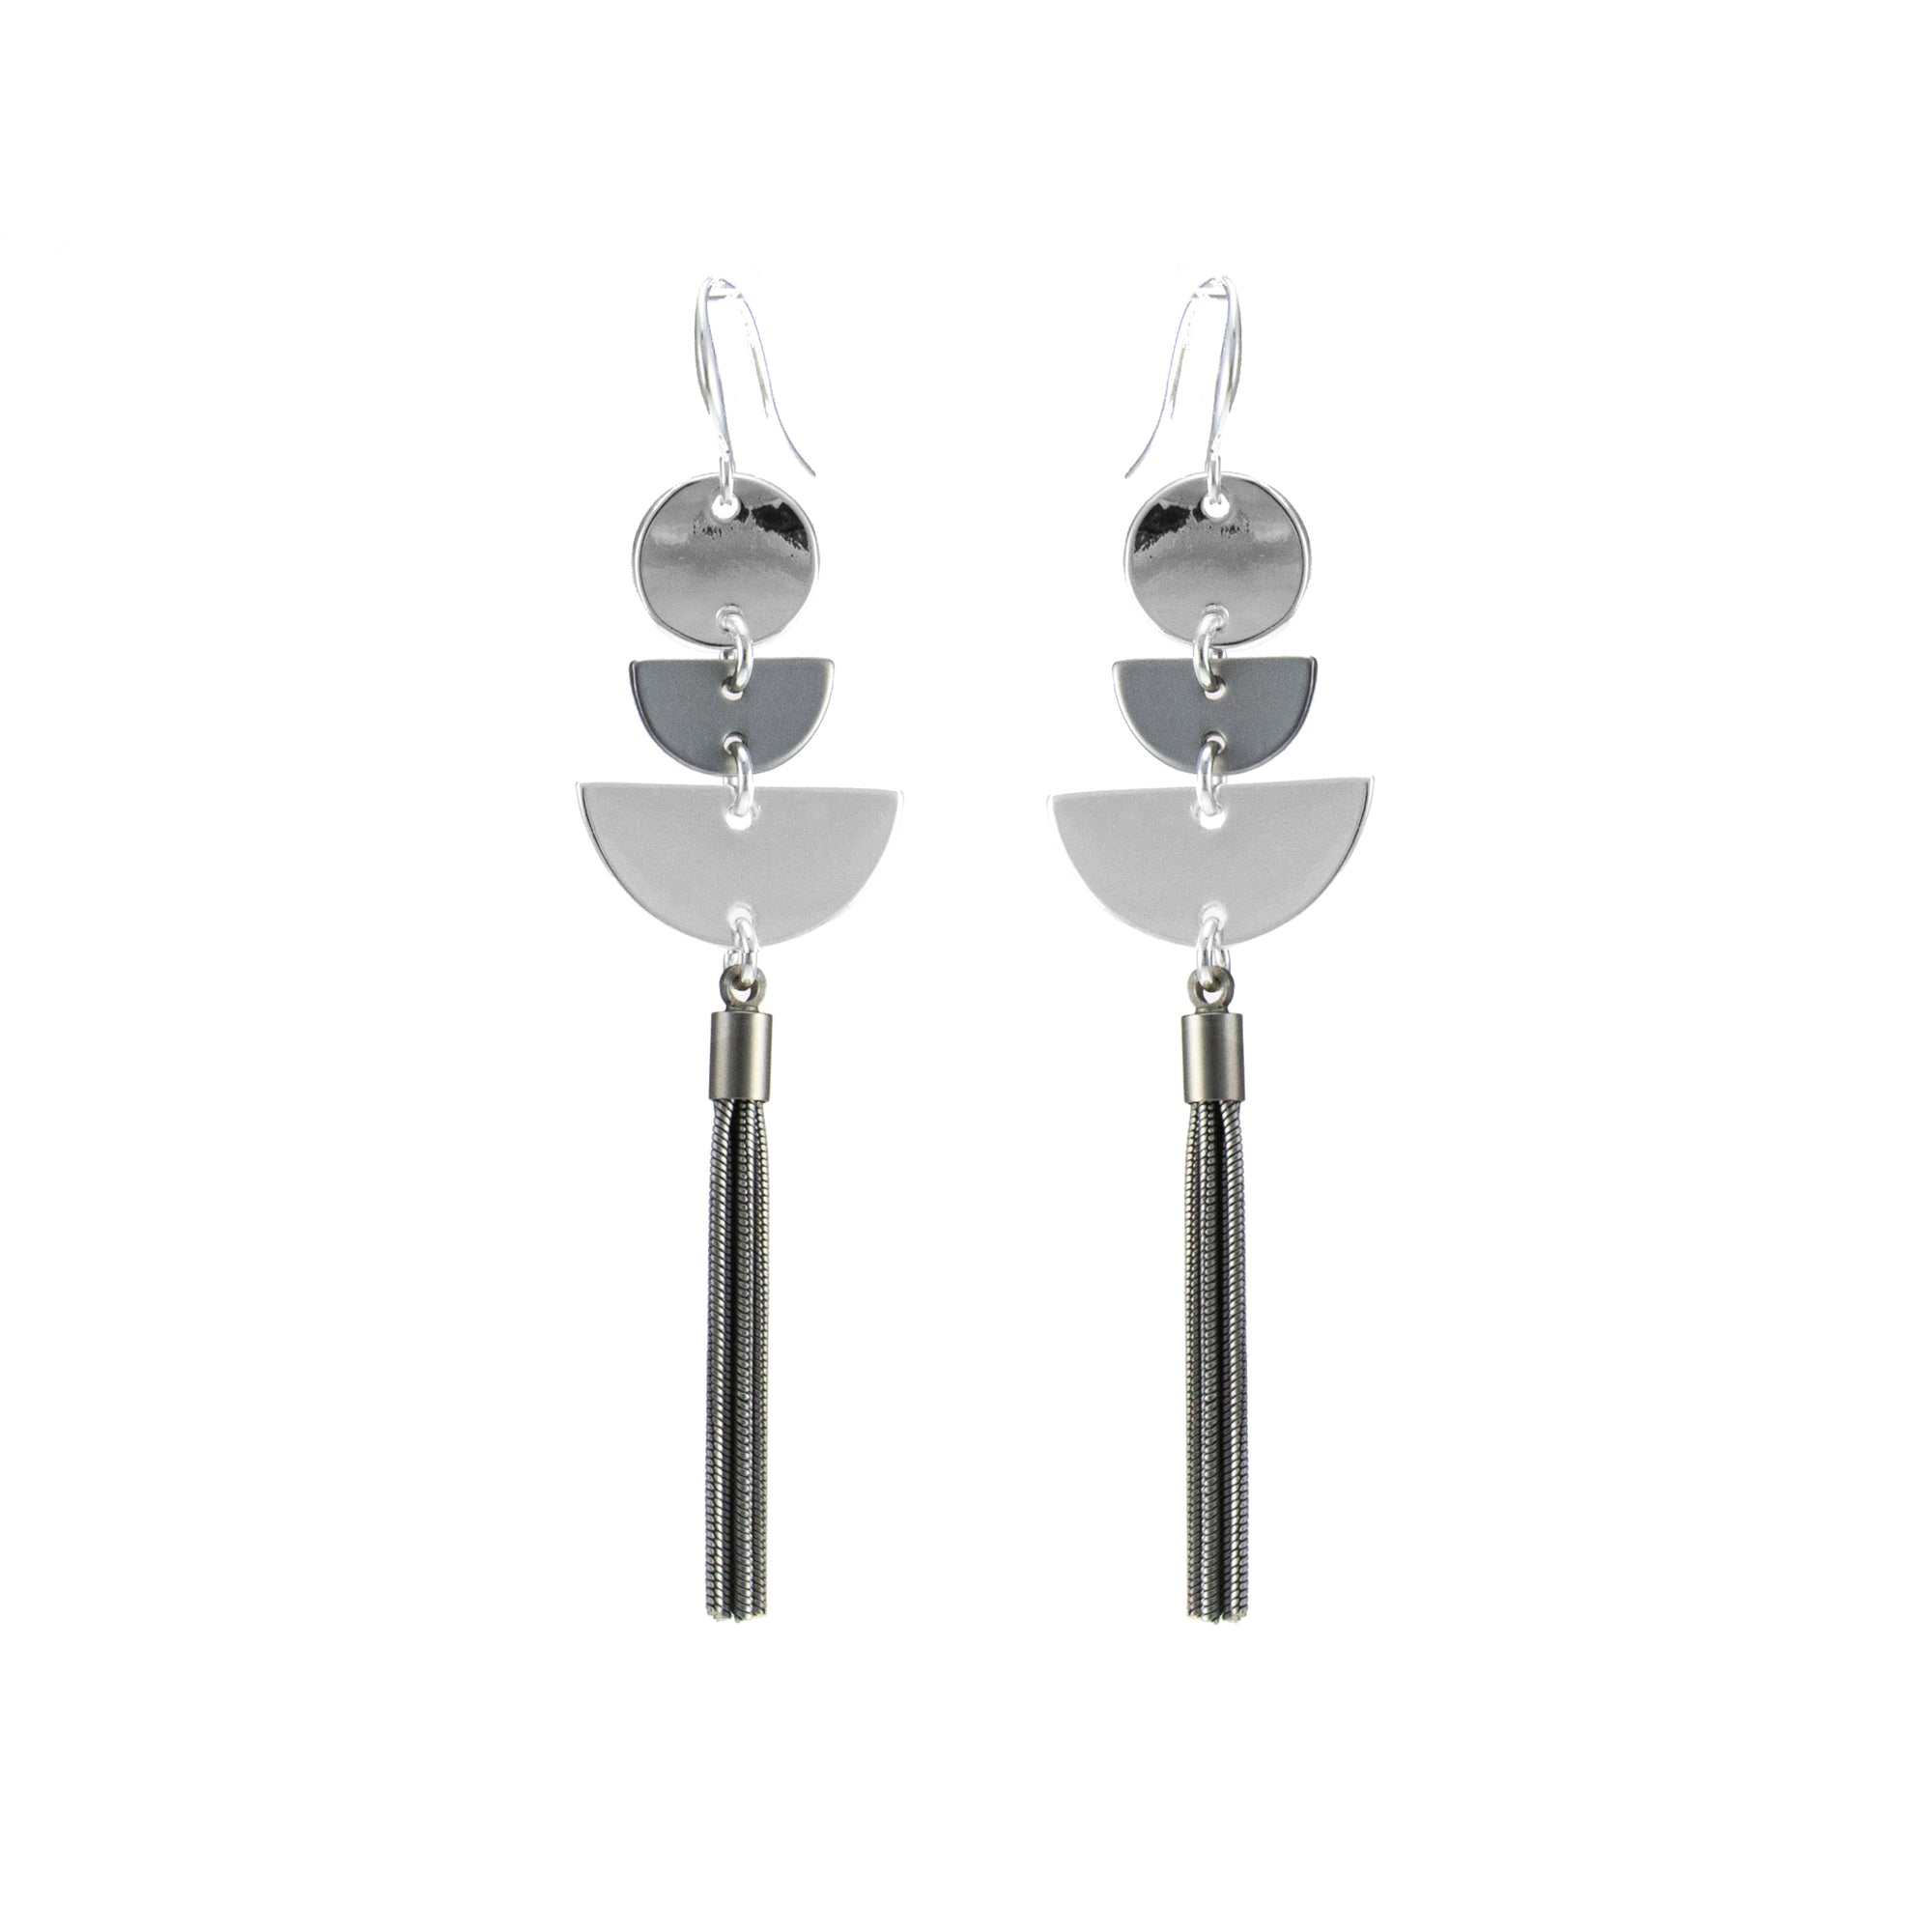 Merx fashion jewellery earrings